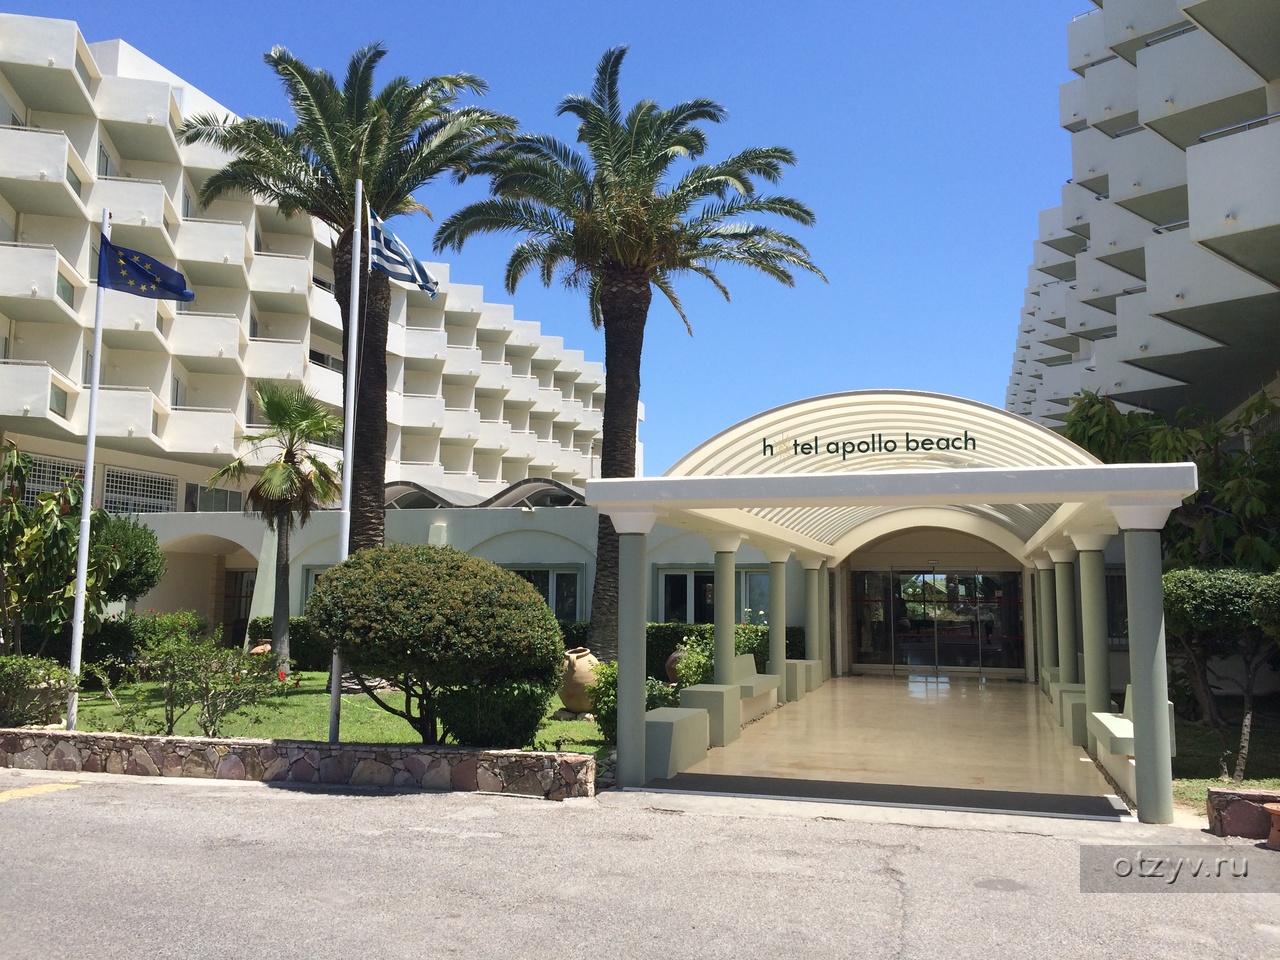 Отель Apollo Beach 4 и Фалираки / Родос 2016 / Apollo Beach / Фотоальбом: M...